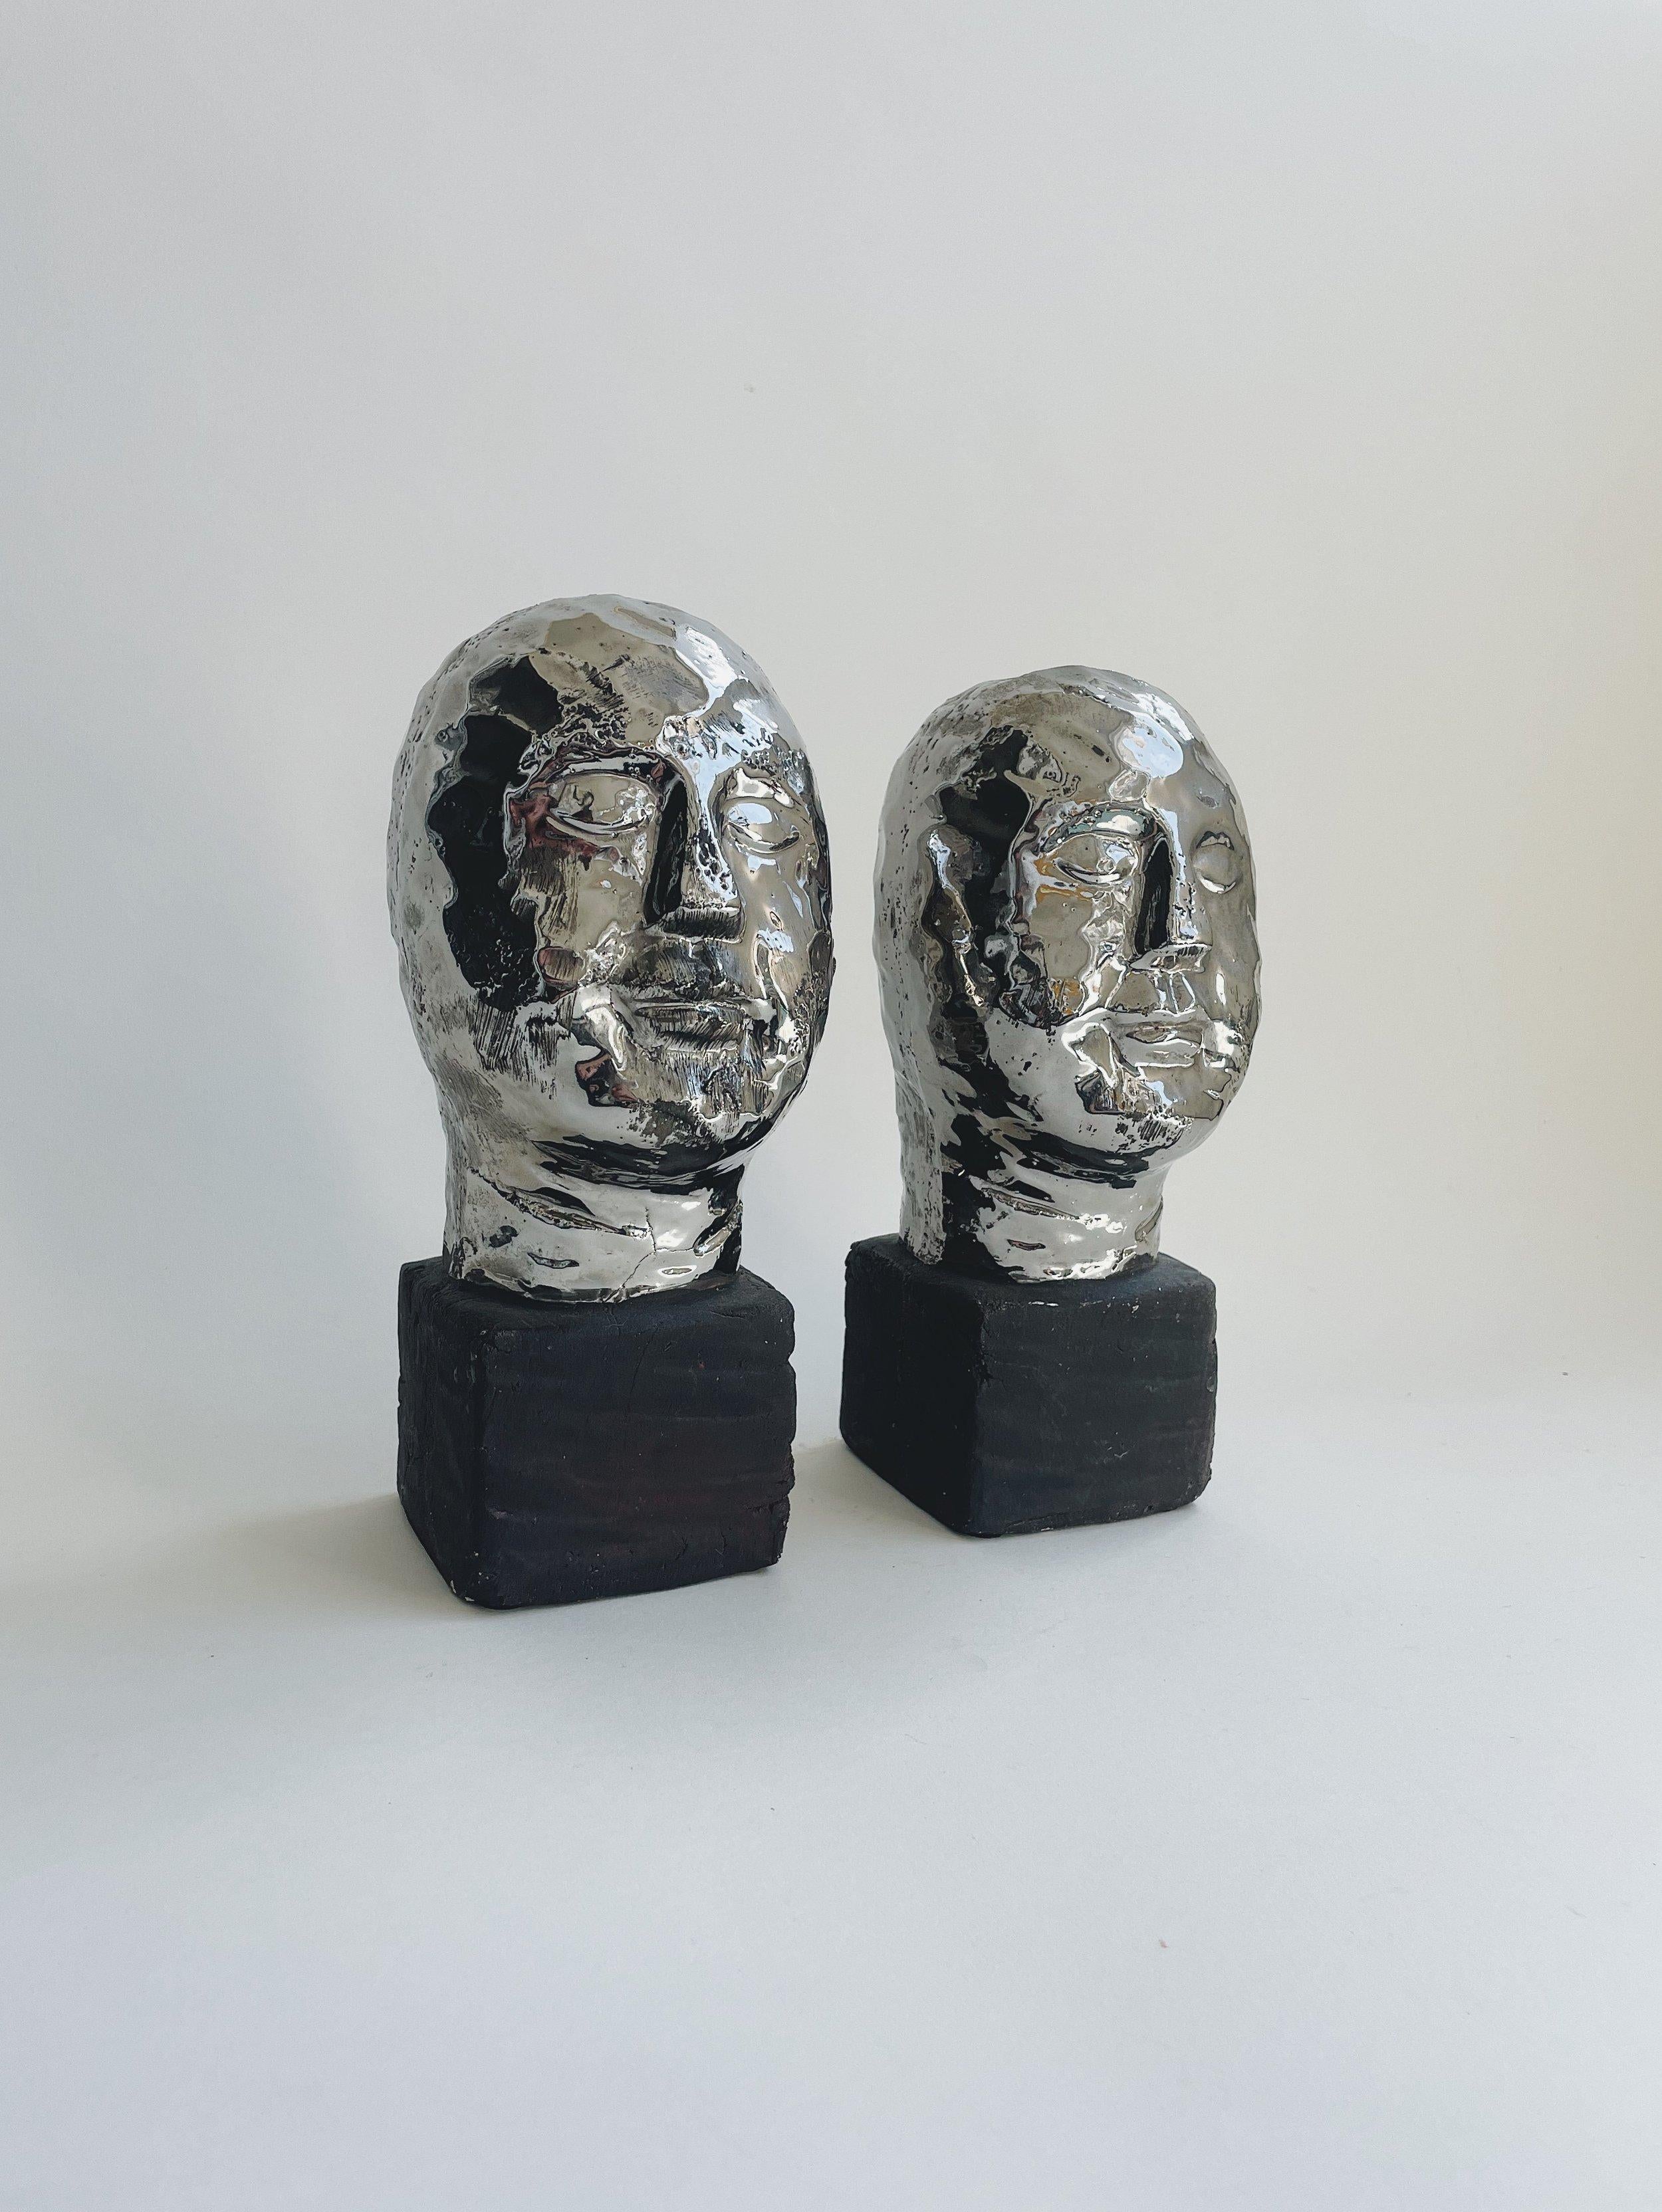 Poterie d'atelier

Remarquable paire de bustes en poterie d'atelier. Des visages simples, presque cycladiques, reposent sur un cube émaillé brun mat. Sculpté sous la forme d'une seule pièce de poterie. Les visages sont émaillés dans un argent